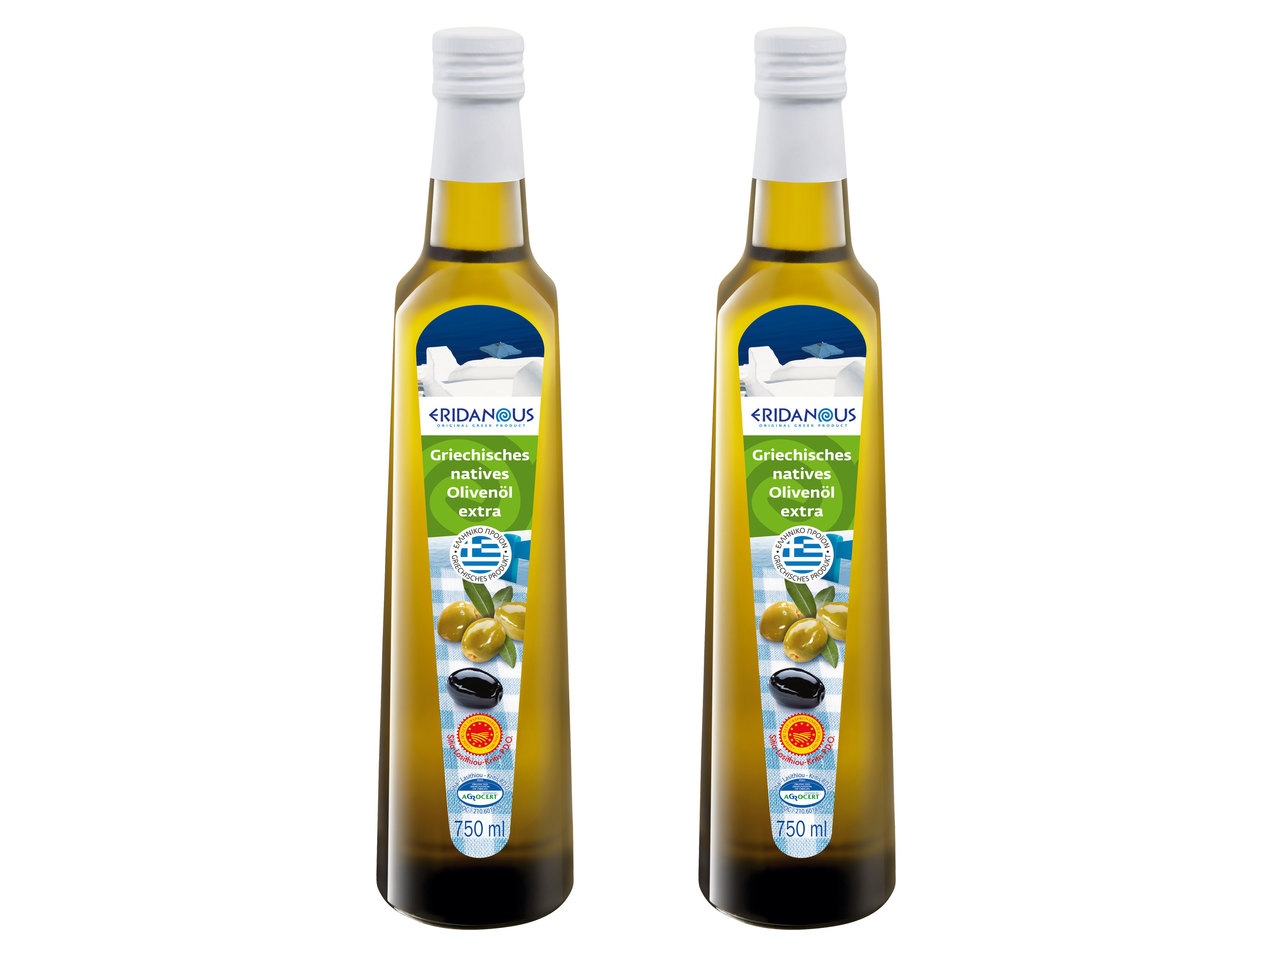 ERIDANOUS Griechisches natives Olivenöl extra g.U.